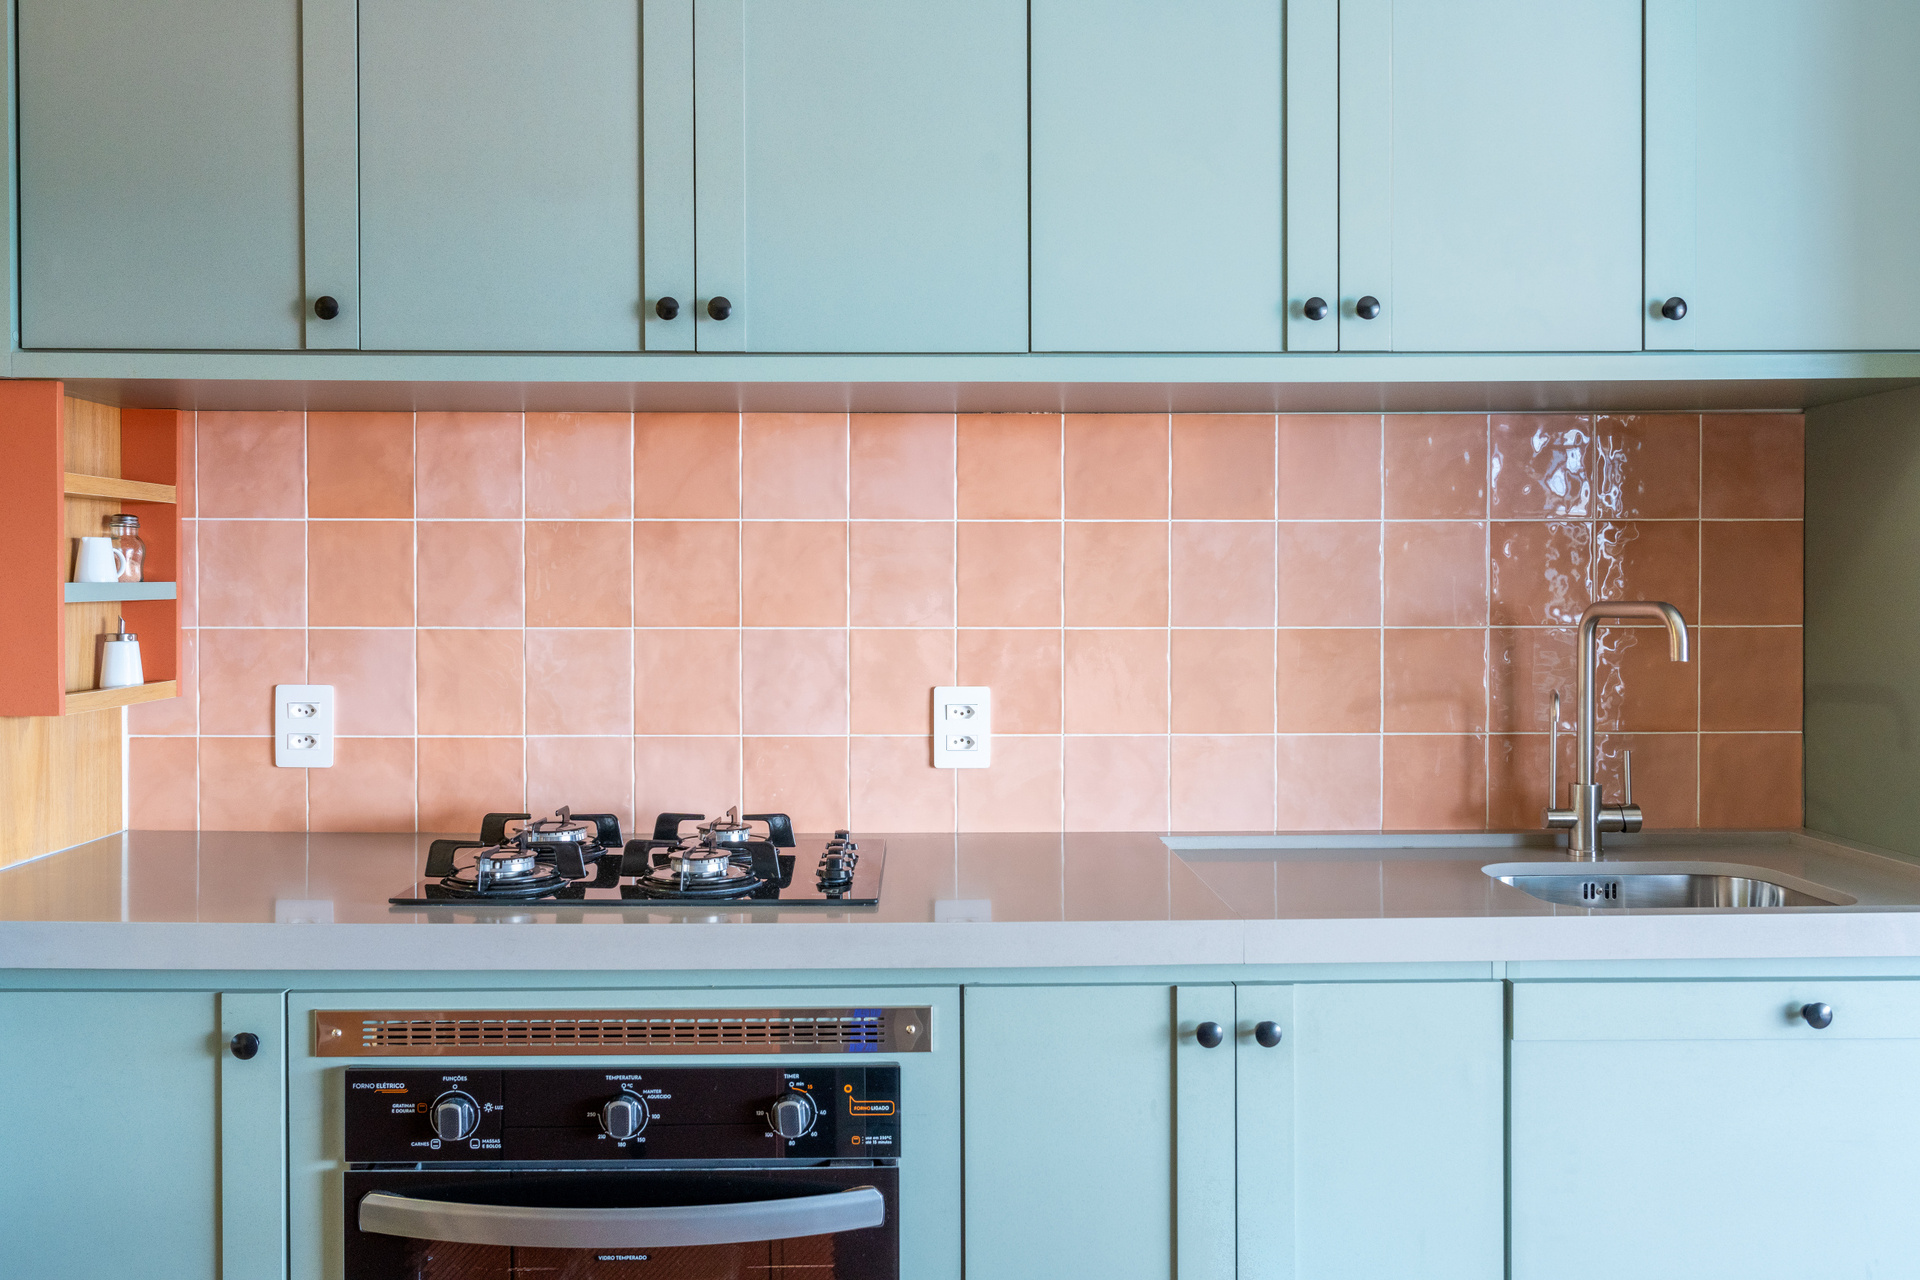 Cozinha com revestimento em cor pêssego na parede, armários em azul e eletrodomésticos pretos